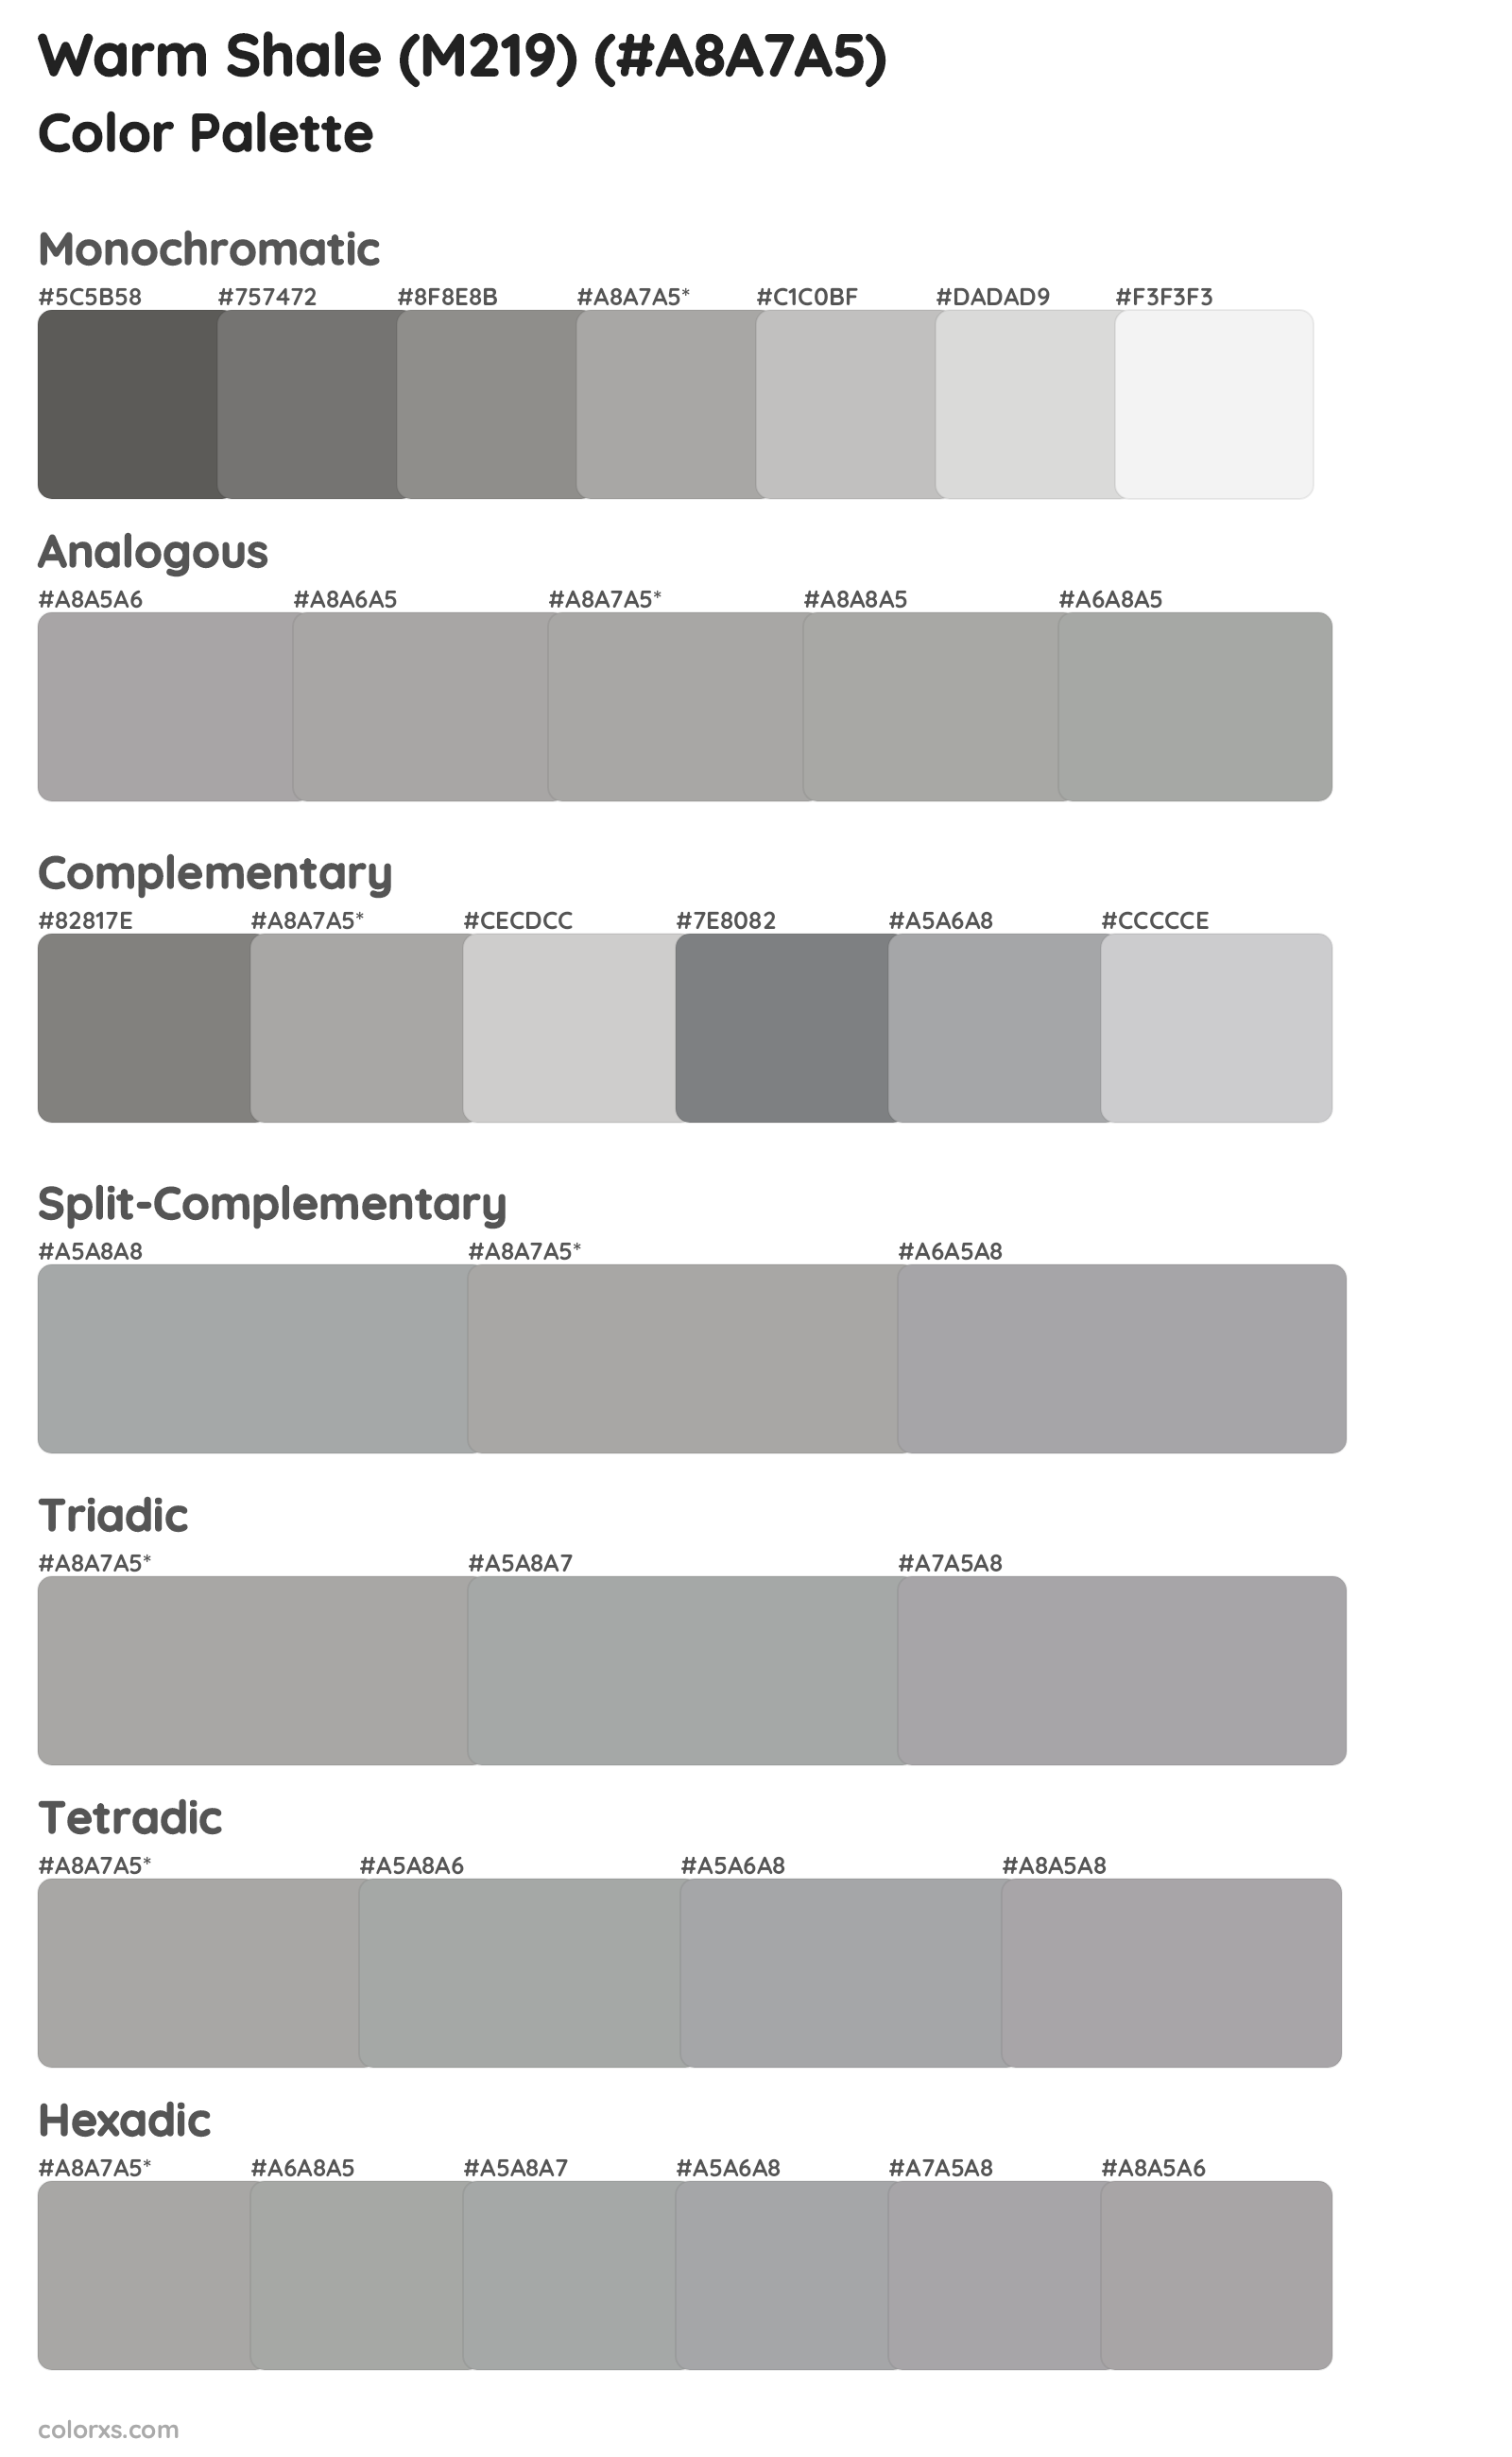 Warm Shale (M219) Color Scheme Palettes